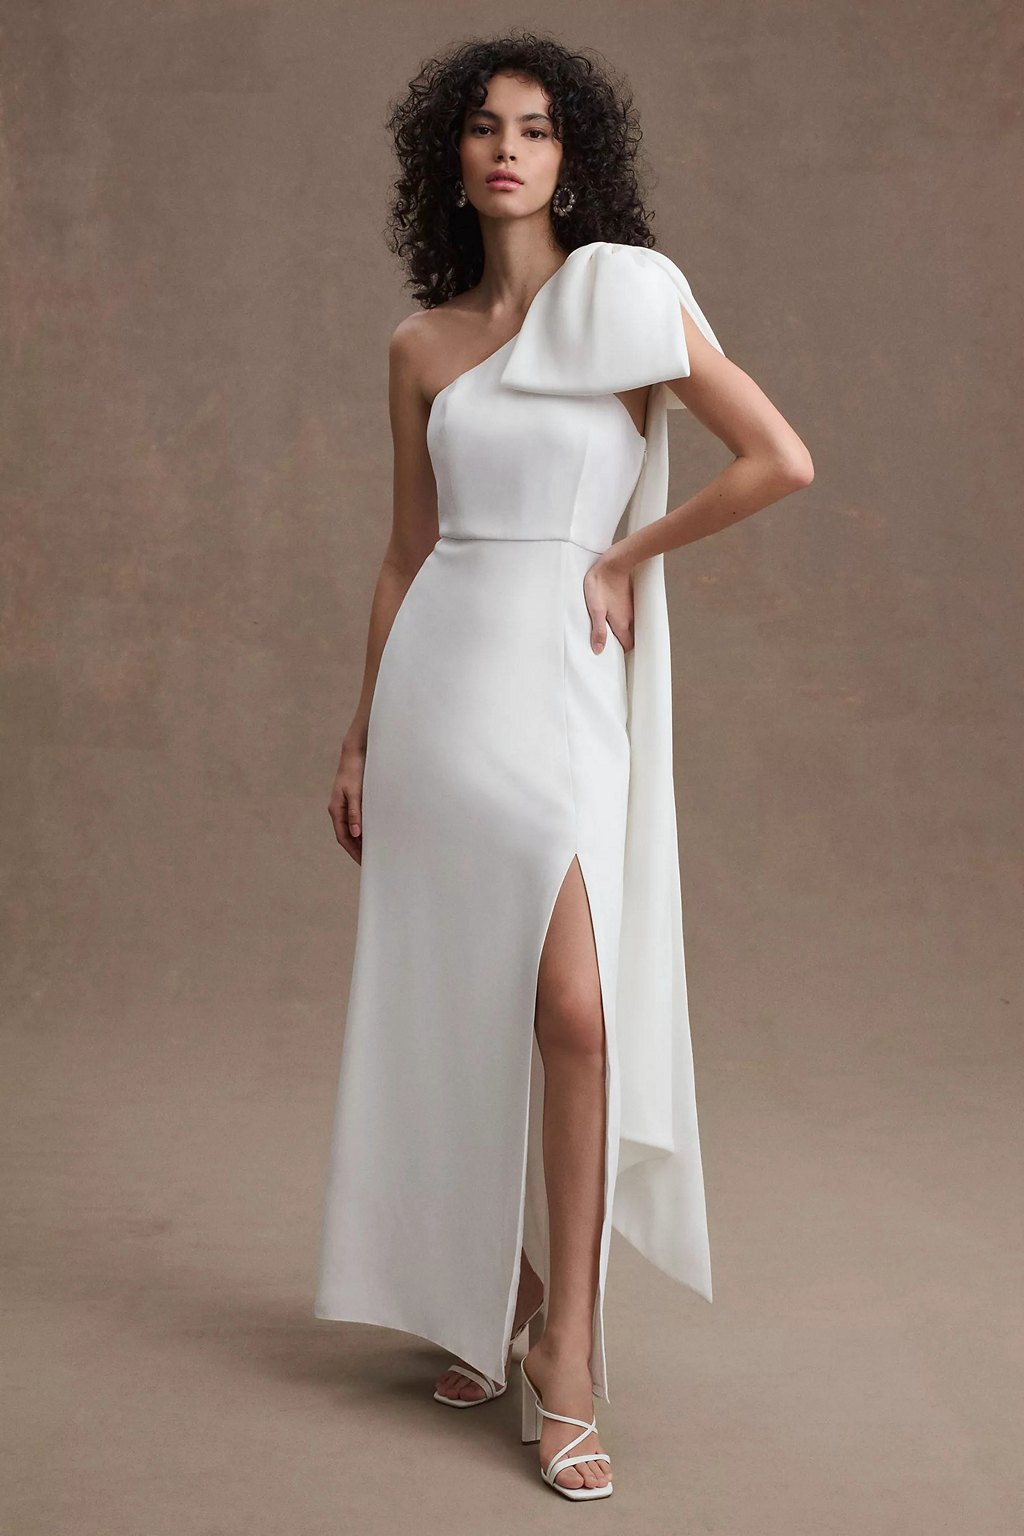 set chân váy trắng xẻ tà + áo croptop mận (có bán lẻ) | Shopee Việt Nam